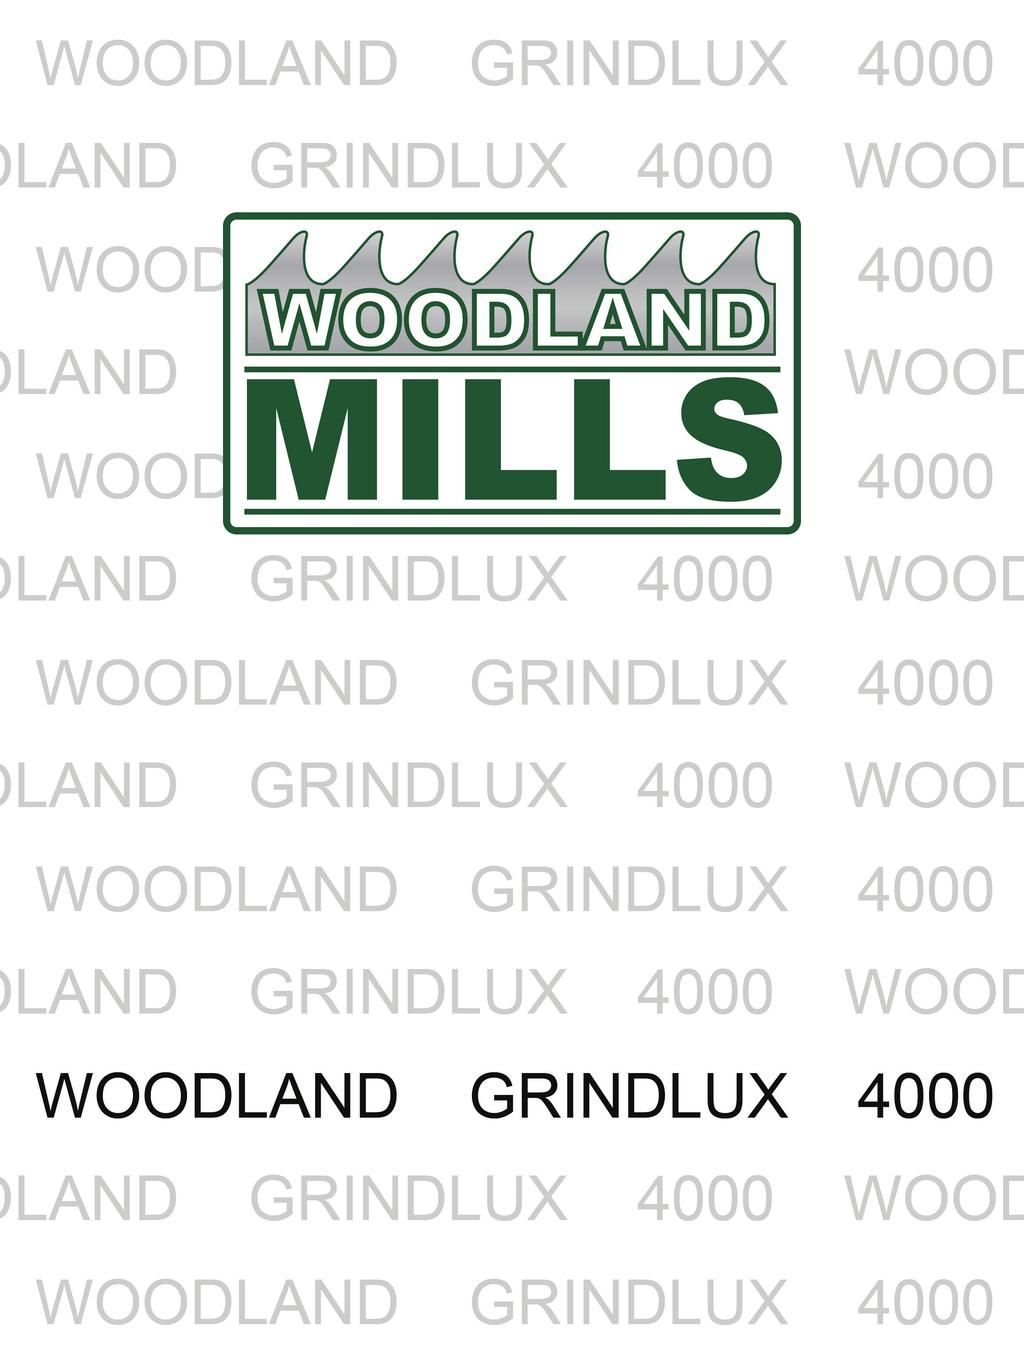 GRINDLUX 4000 GRINDL UX 4000 GRINDLUX 40 00 GRINDLUX 4000 GR INDLUX 4000 GRINDLU X 4000 GRINDLUX 400 0 GRINDLUX 4000 GRIN DLUX 4000